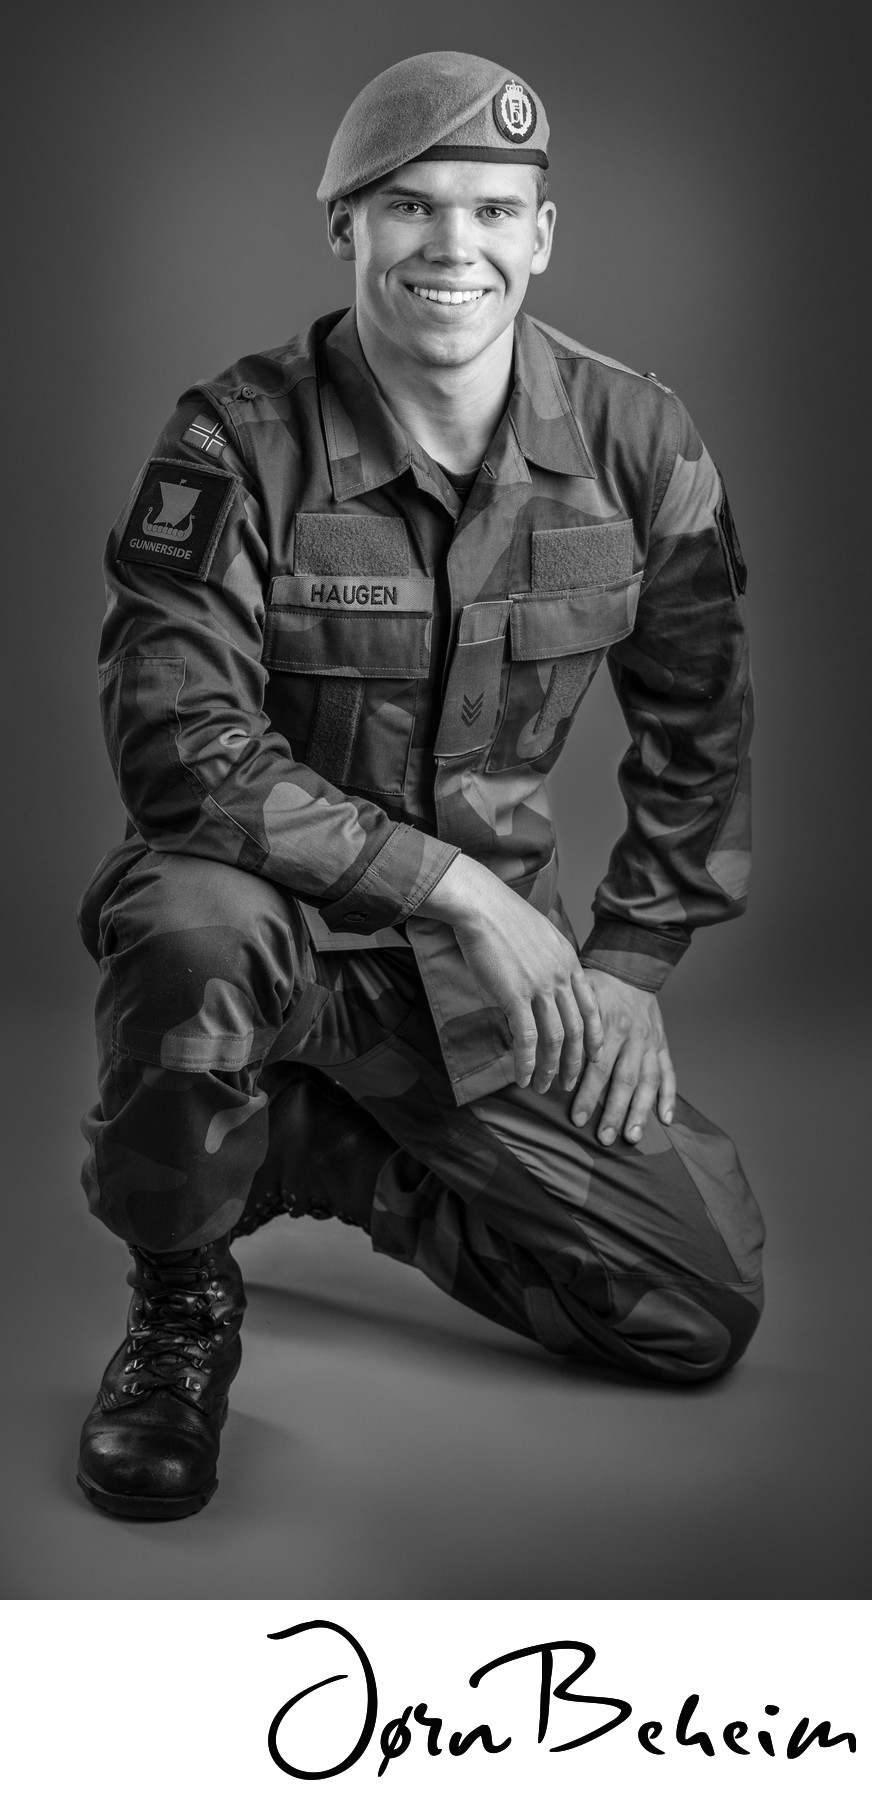 Militærbilder i fotostudio, studiofotograf Jørn Beheim